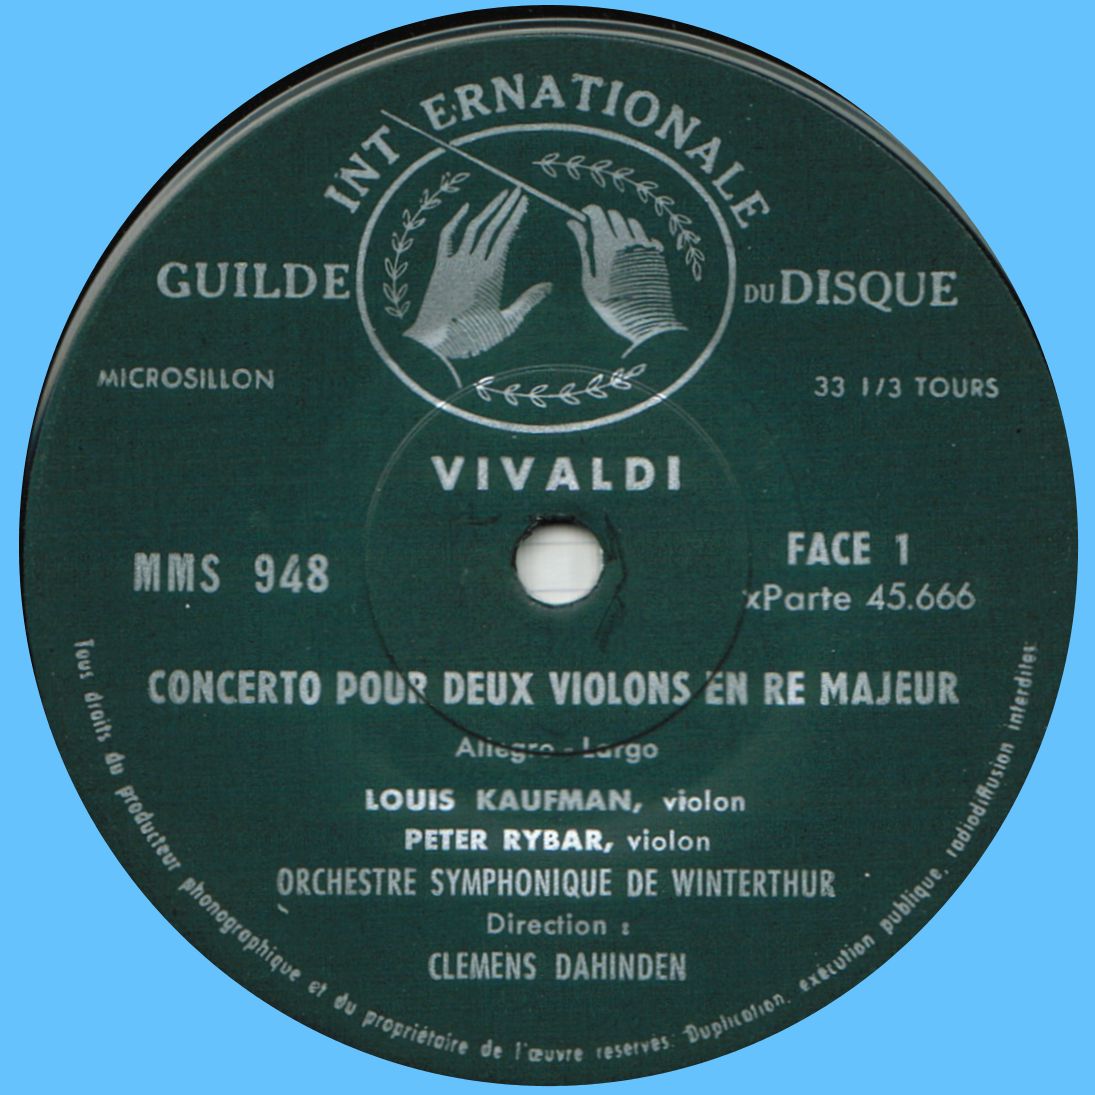 Guilde Internationale du Disque MMS 948, étiquette recto